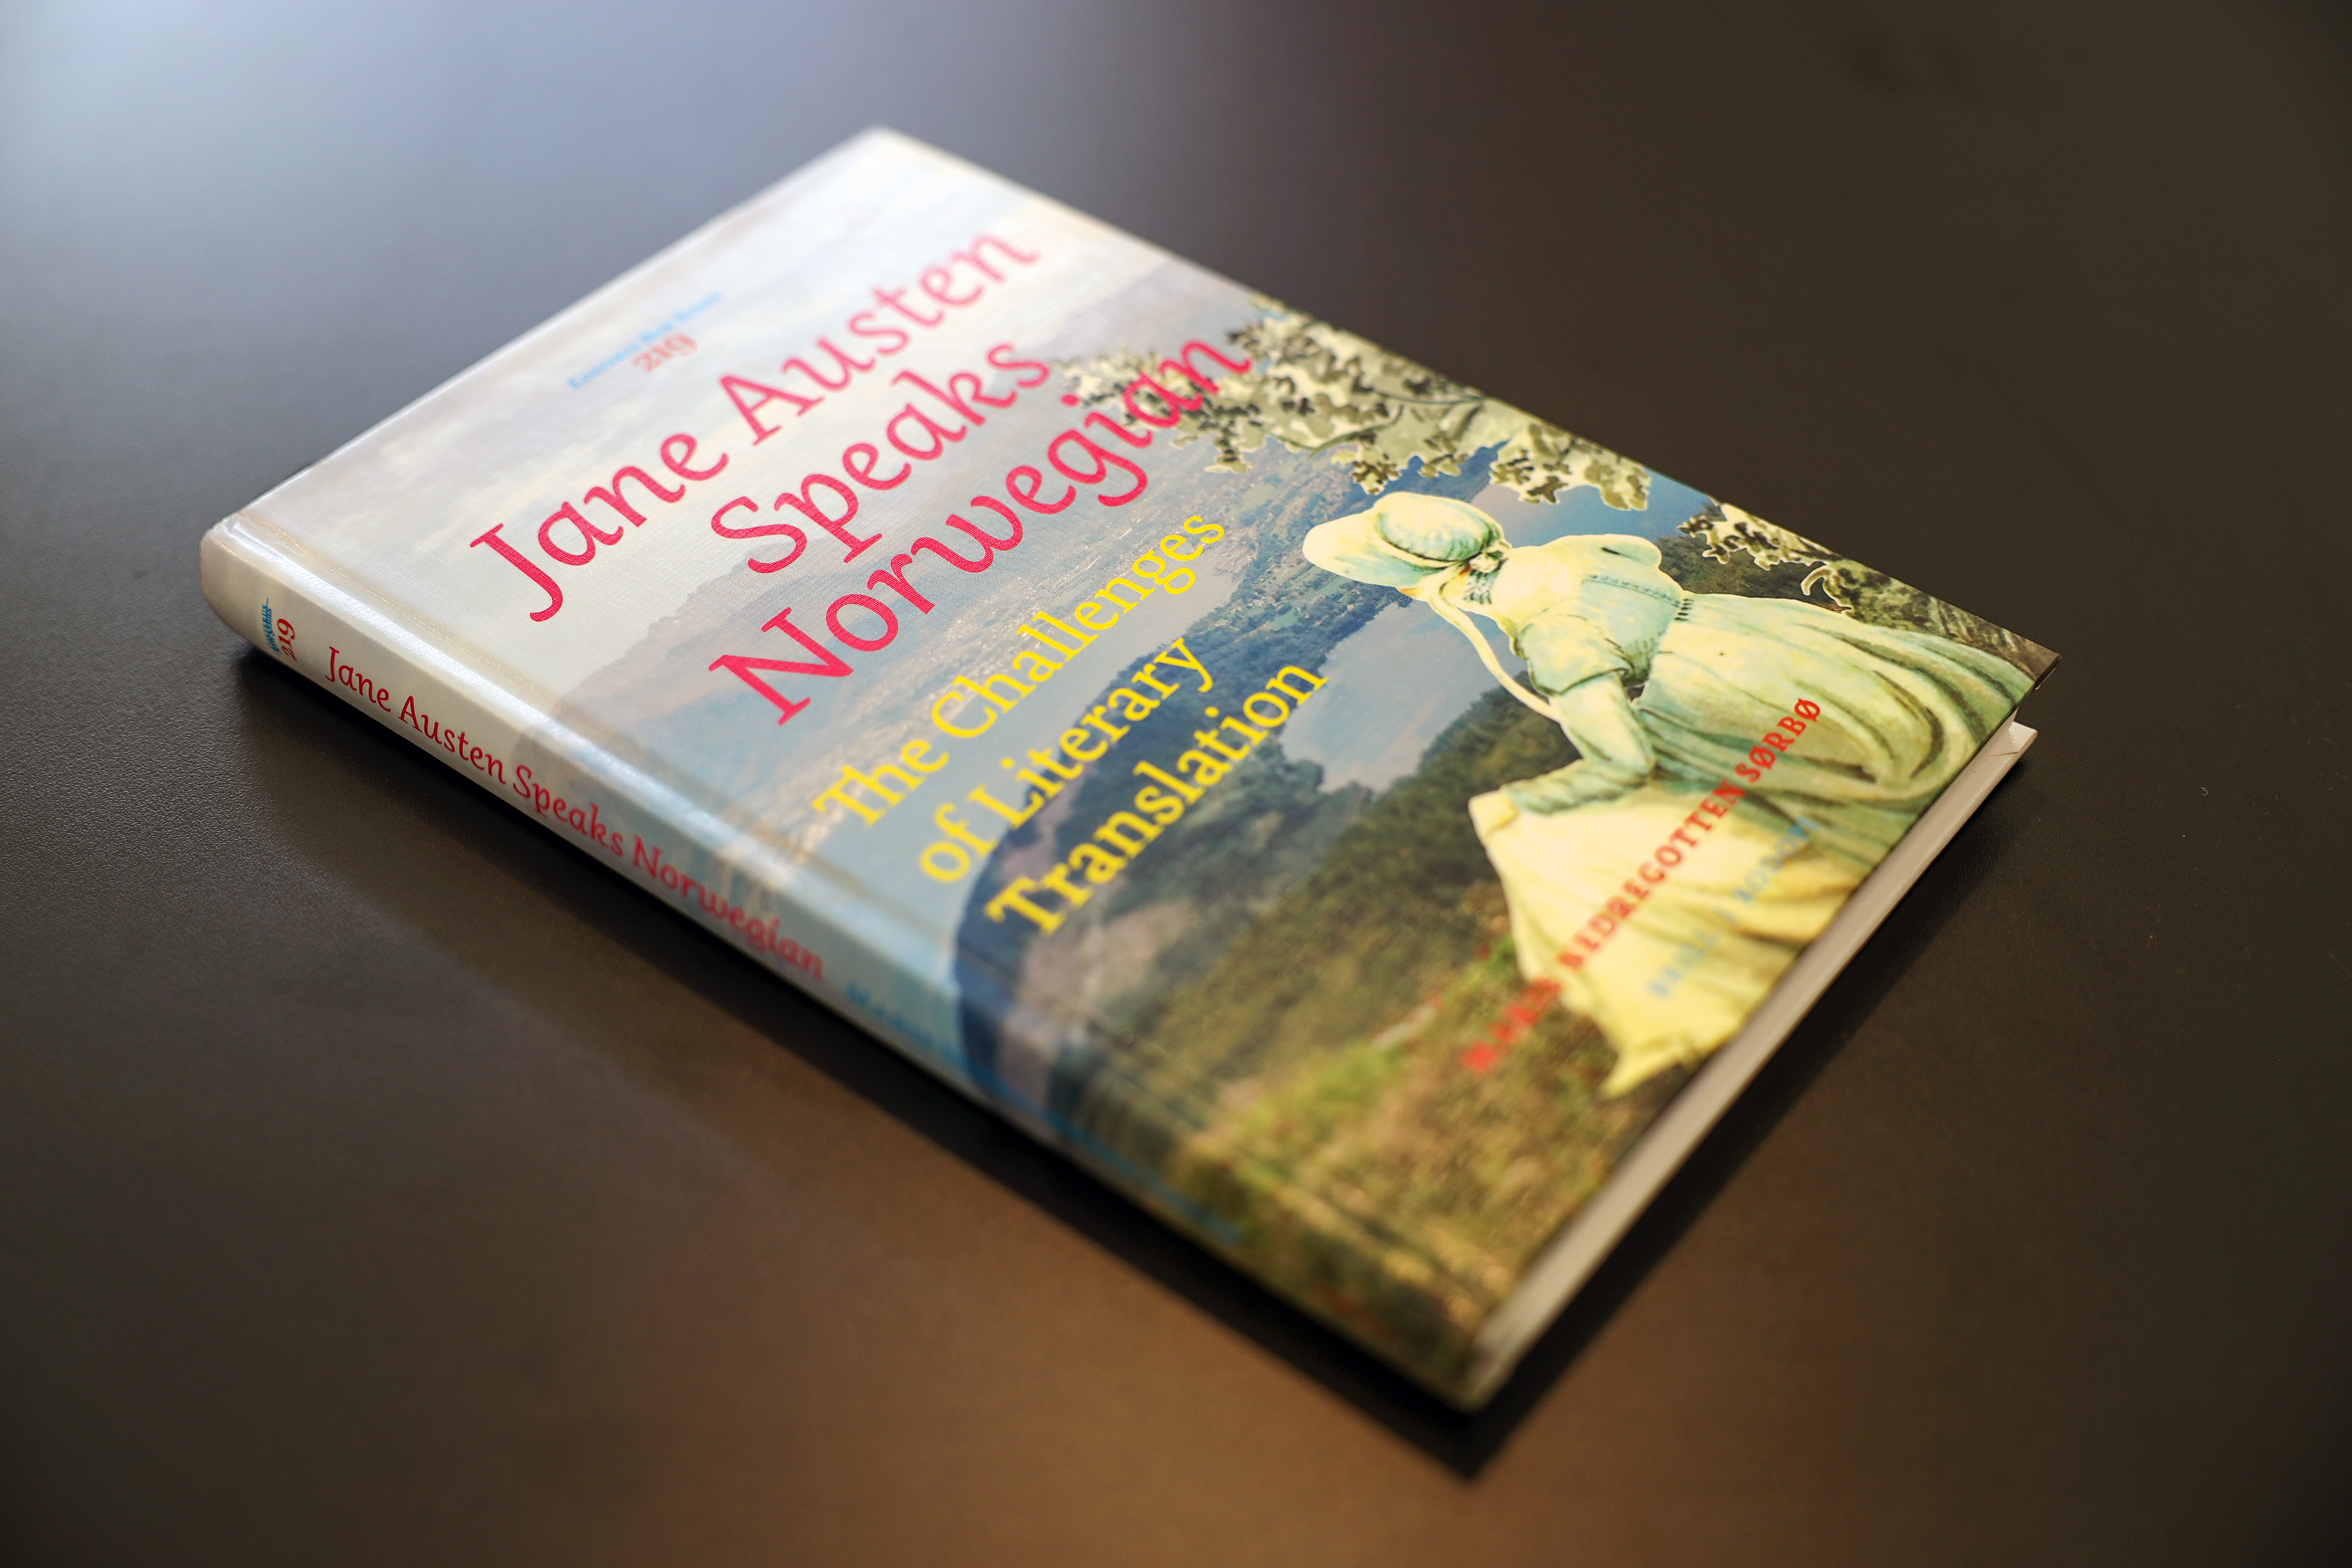 Omslaget til Marie Nedregotten Sørbøs andre monografi. Jane Austen på Helgehornet på omslaget.